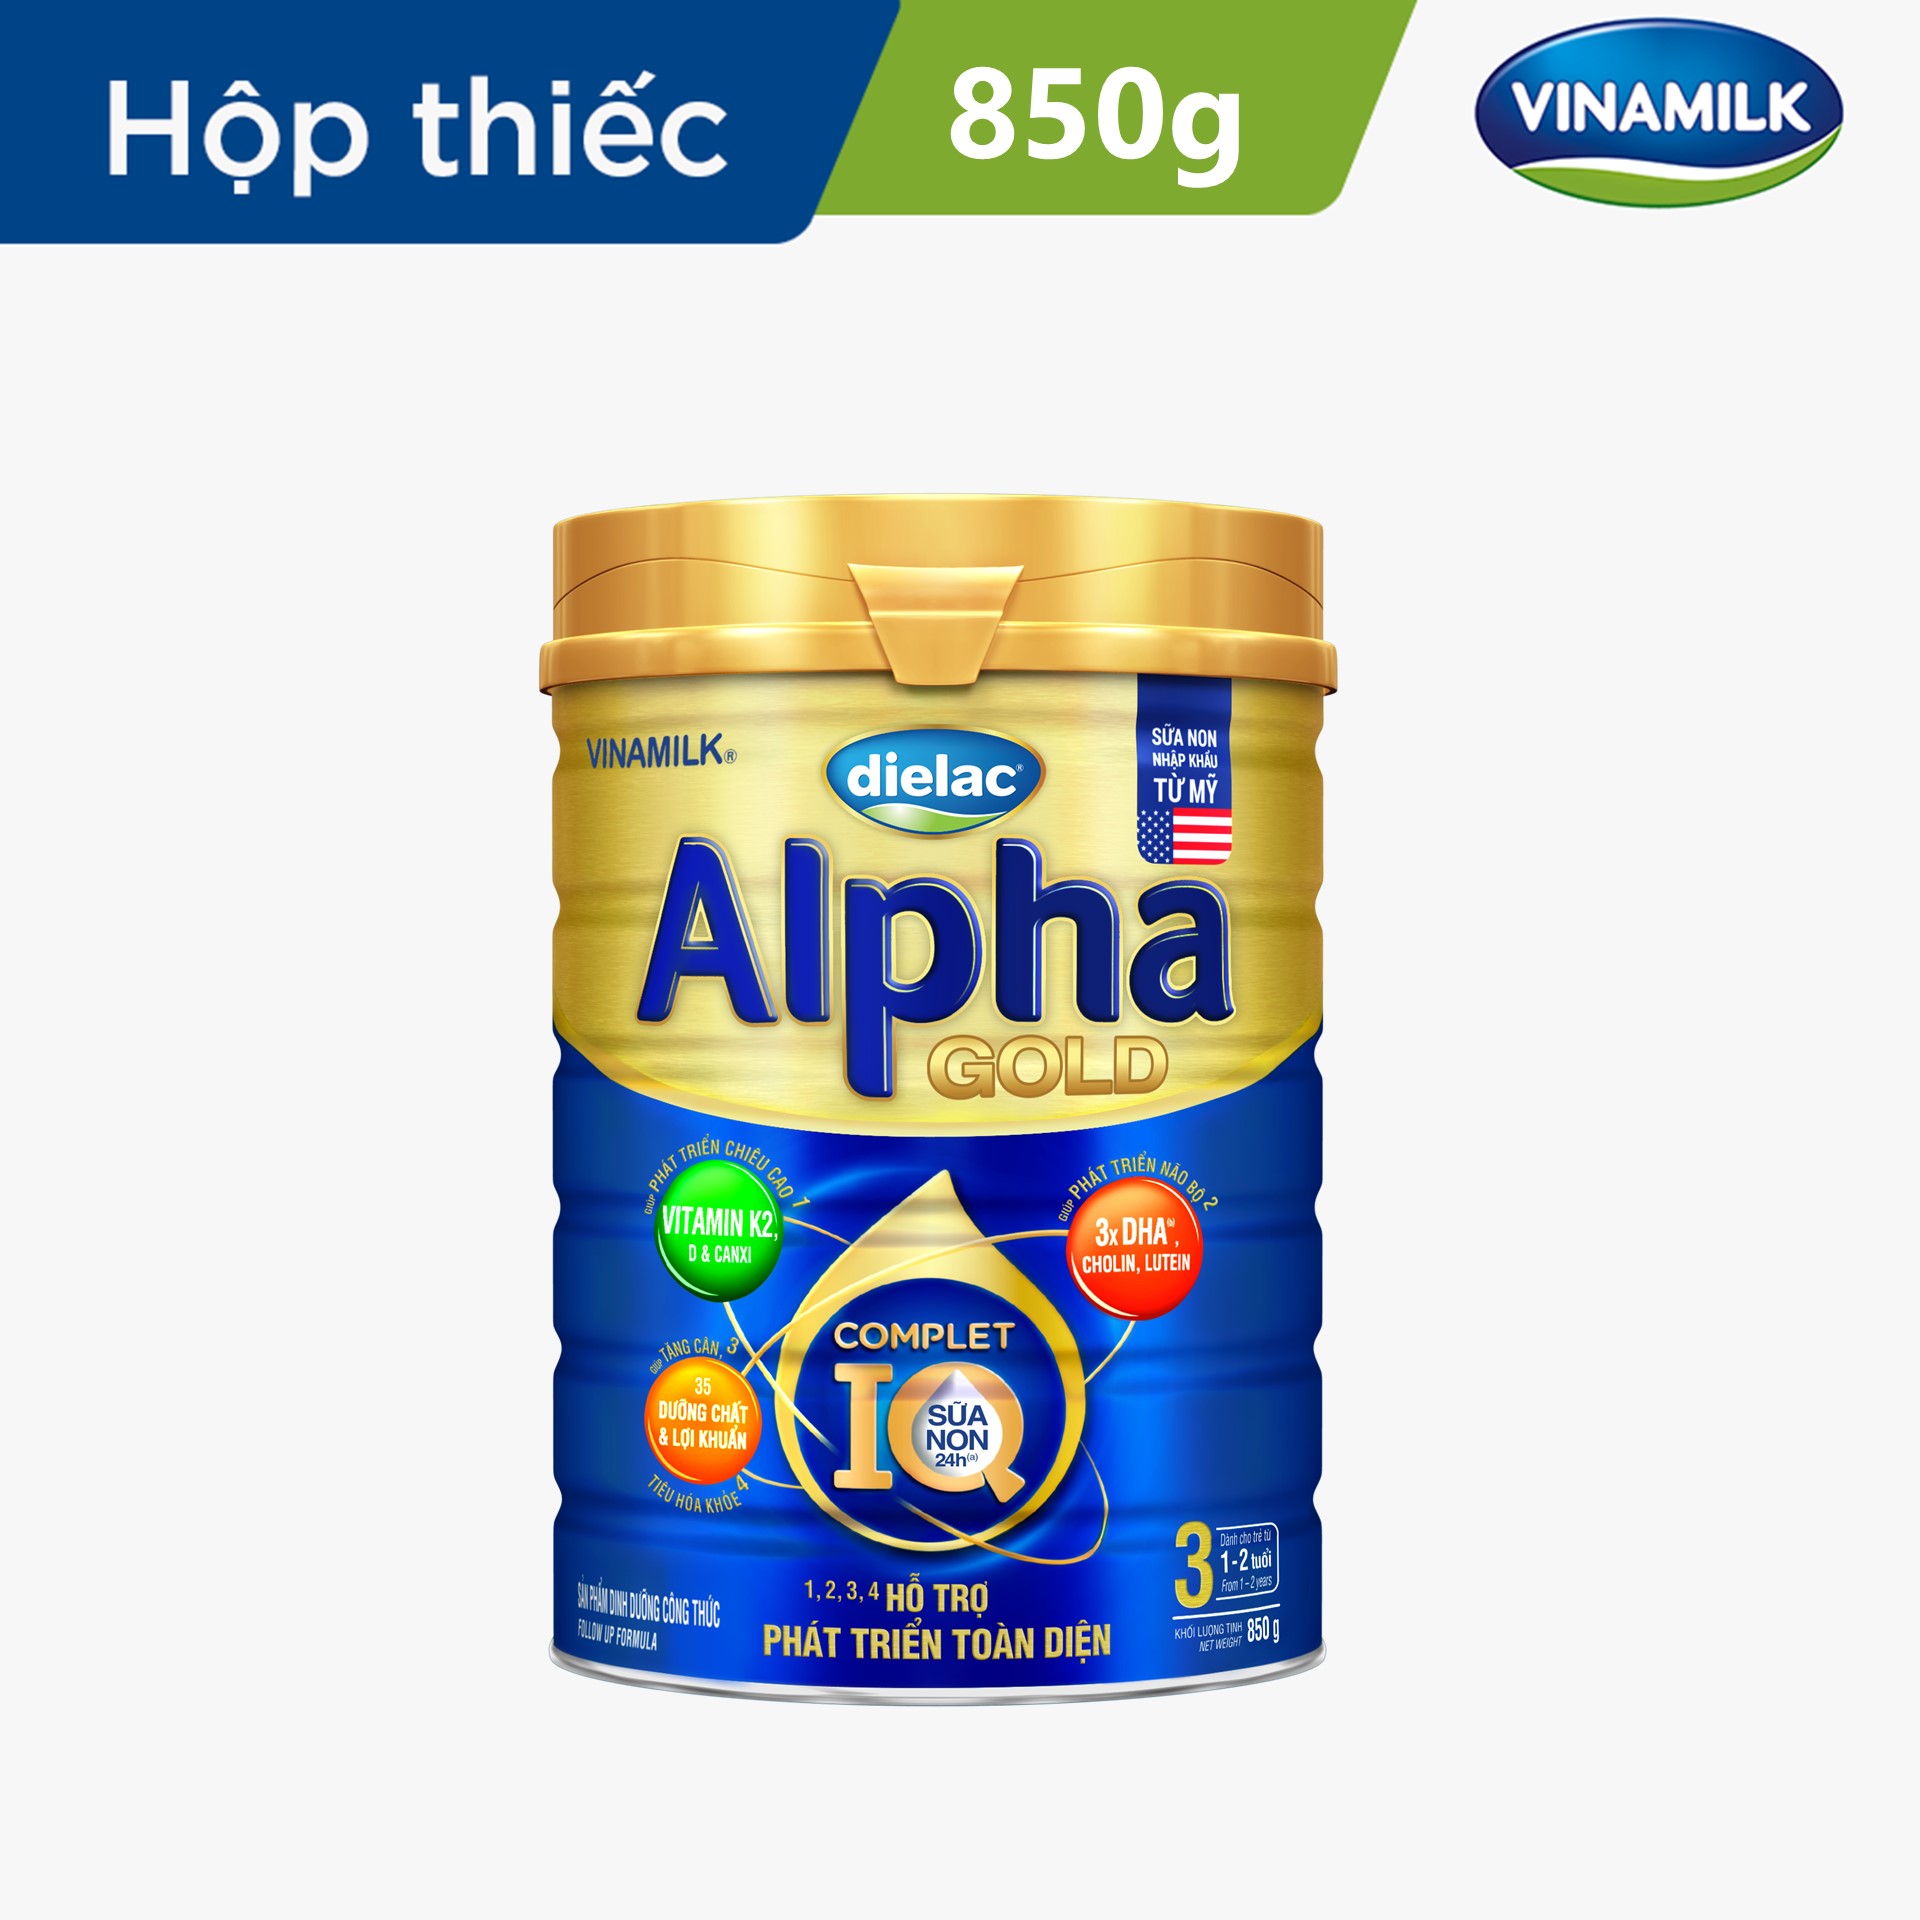 Sữa bột Vinamilk Dielac Alpha Gold 3 - Hộp thiếc 850g (cho trẻ từ 1 - 2 tuổi) - Sữa công thức hỗ trợ phát triển trí não của bé, tăng cân, chiều cao